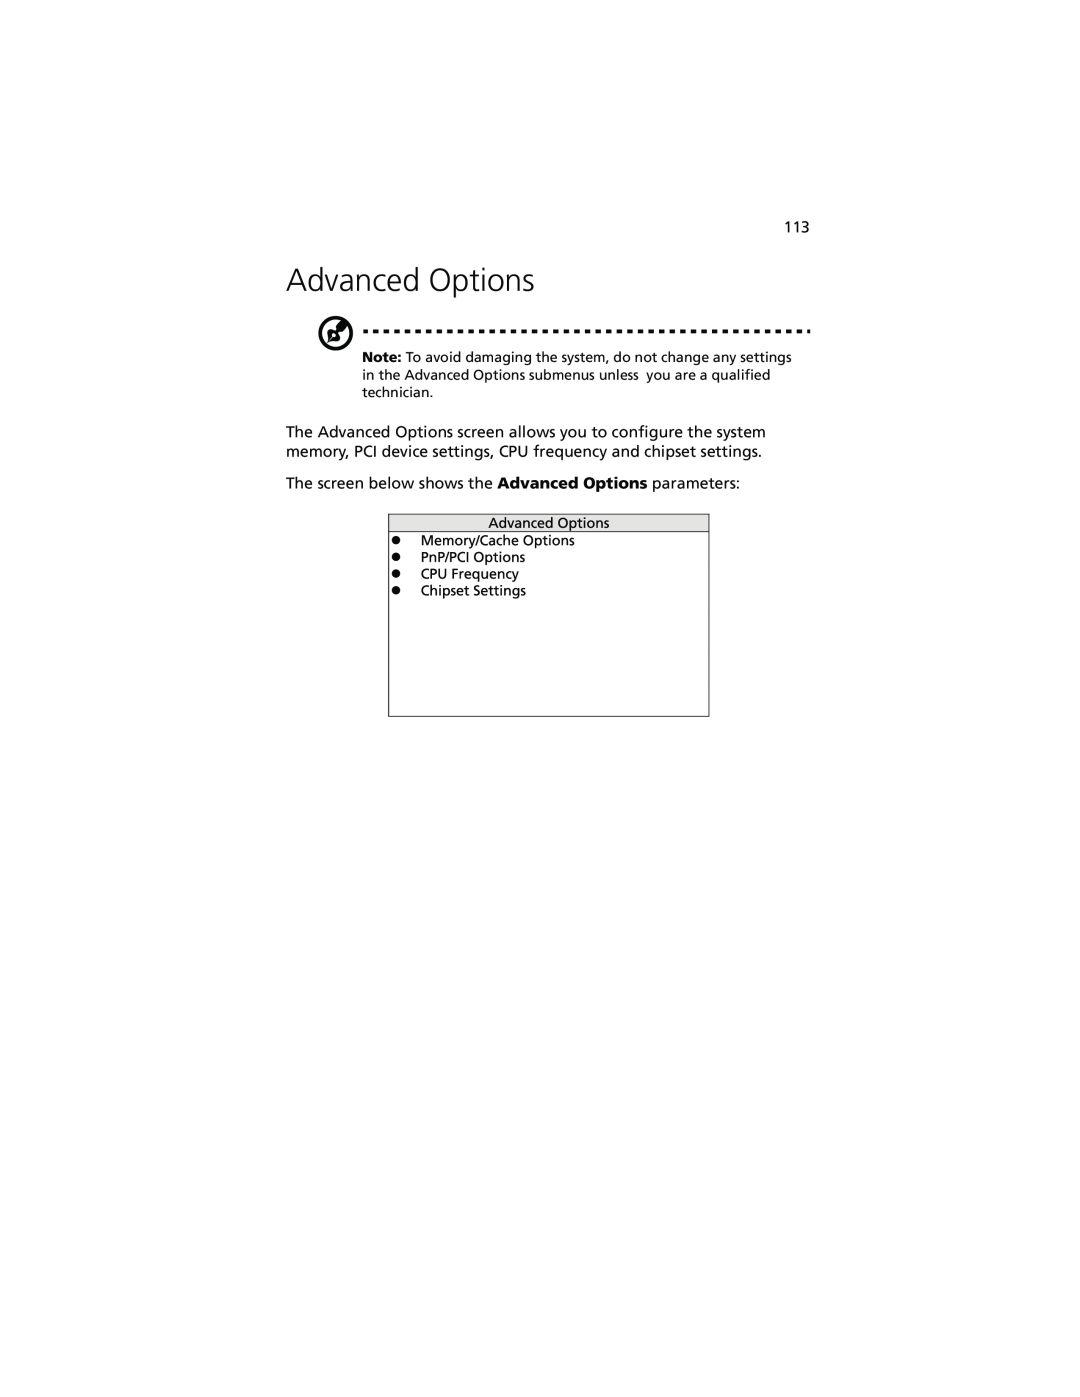 Acer Altos G610 manual Advanced Options 